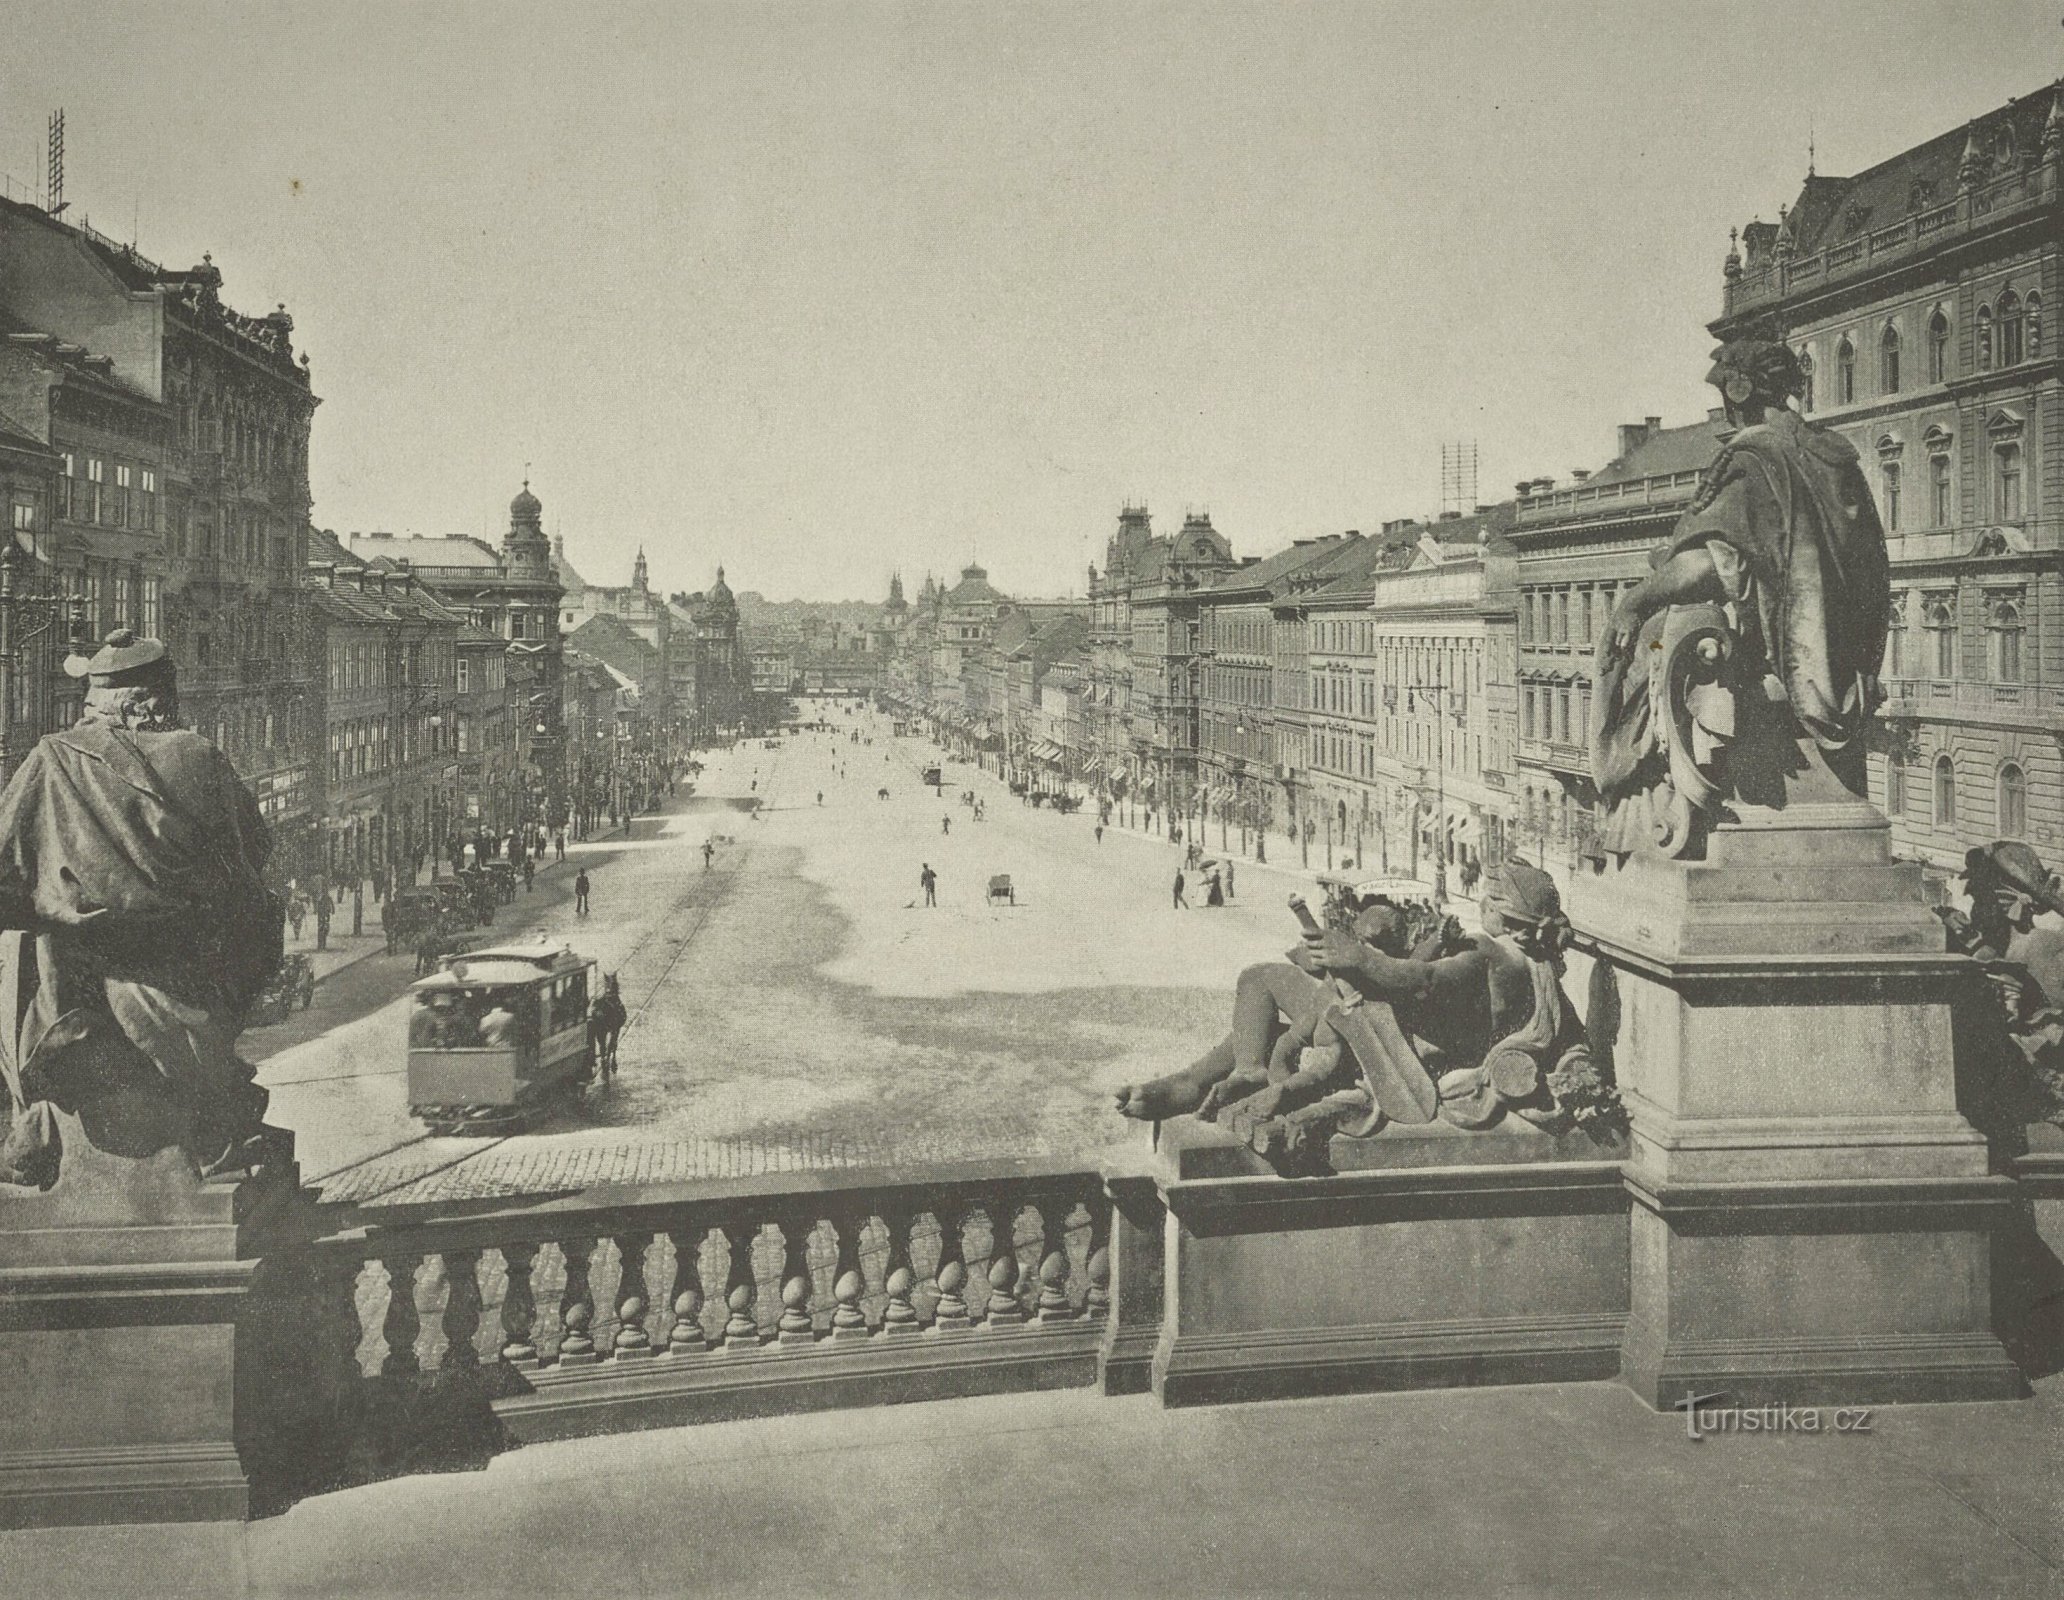 Näkymä Prahan Venceslauksen aukiolle kansallismuseosta (luultavasti 1897-1898)